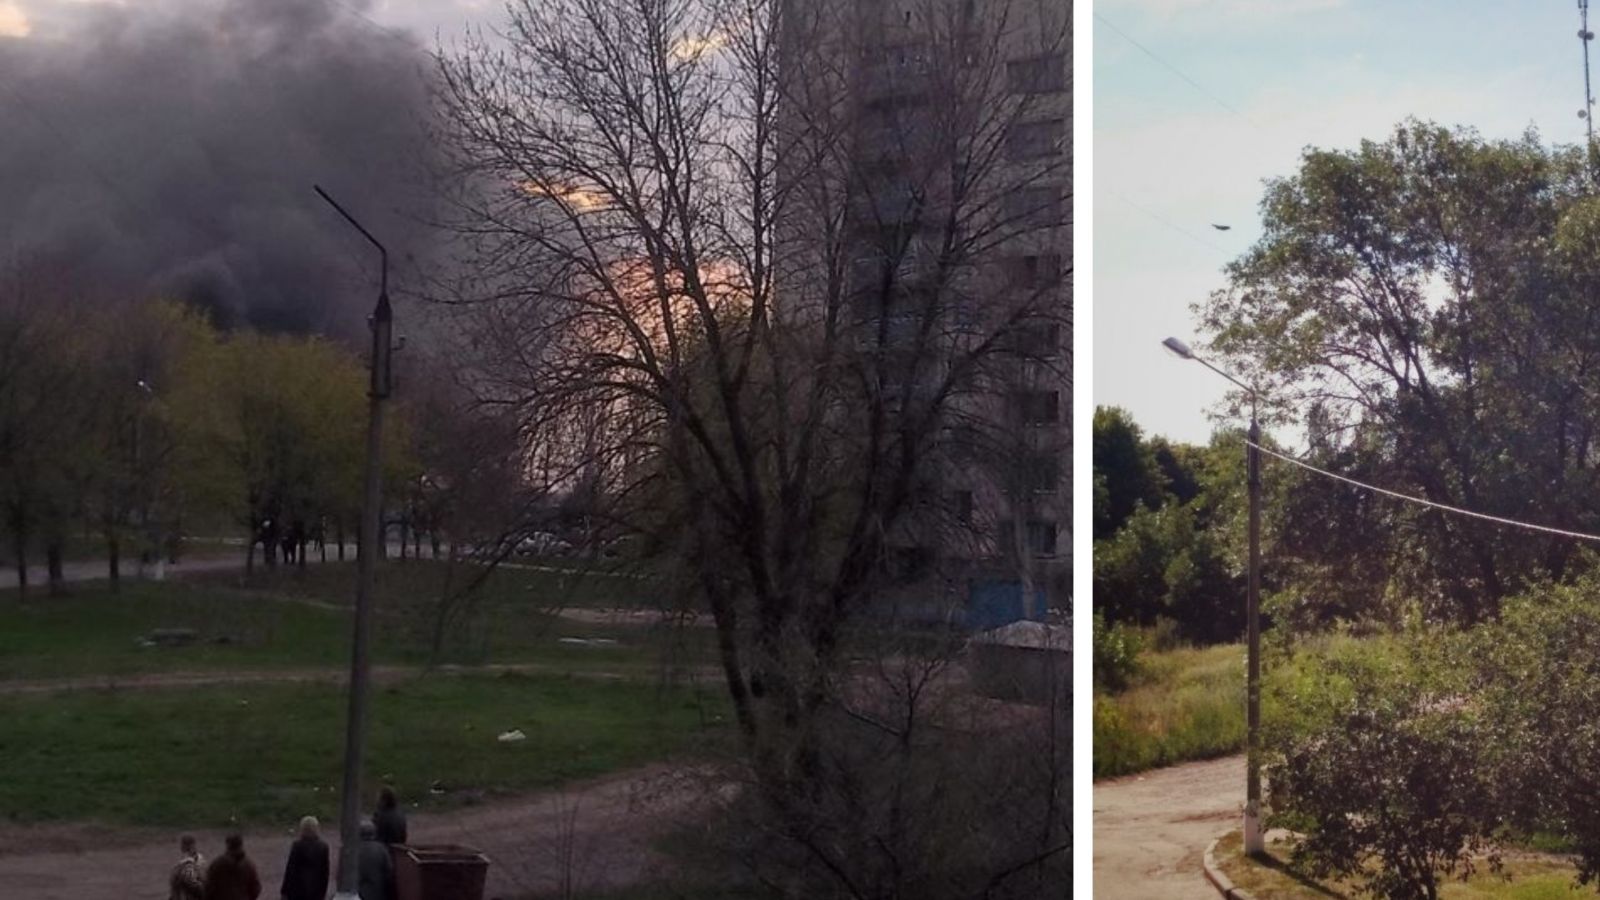 Город Краматорск восстанавливается после АТО. Фонарный столб на фоне дыма от горящих на баррикаде покрышек, 2014 год. Впоследствии был отремонтирован